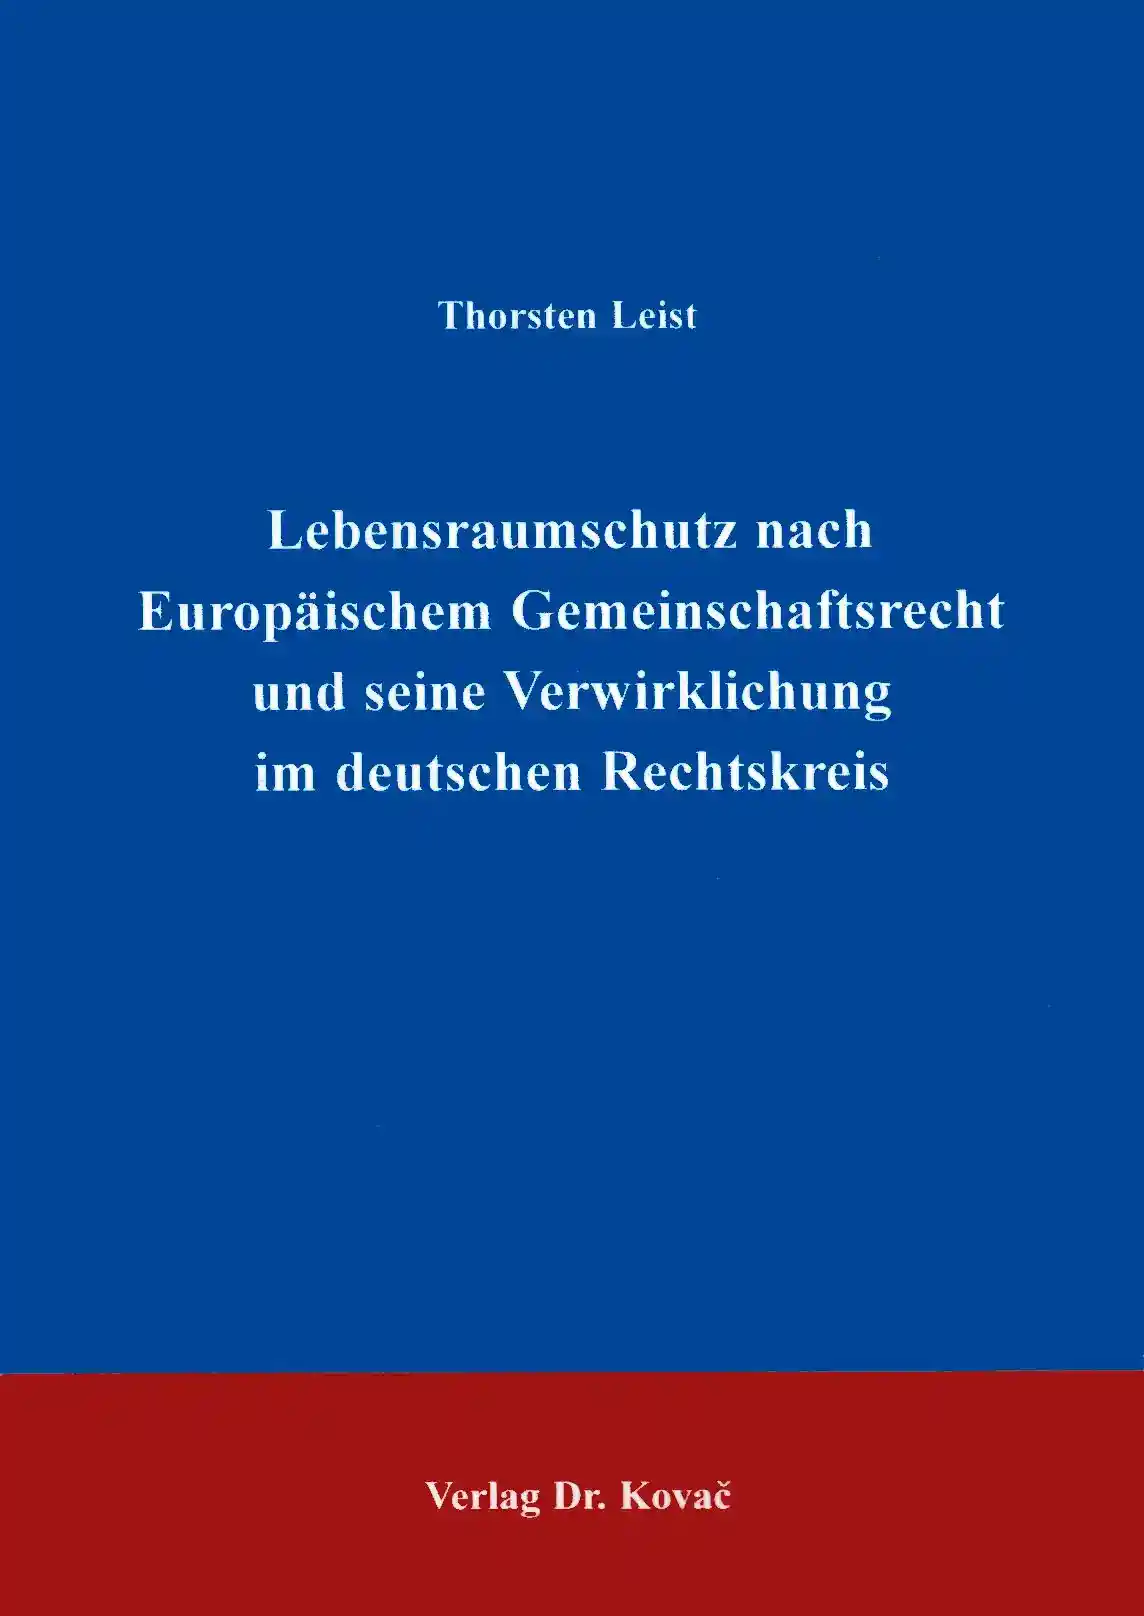 Lebensraumschutz nach Europäischem Gemeinschaftsrecht und seine Verwirklichung im deutschen Rechtskreis (Doktorarbeit)